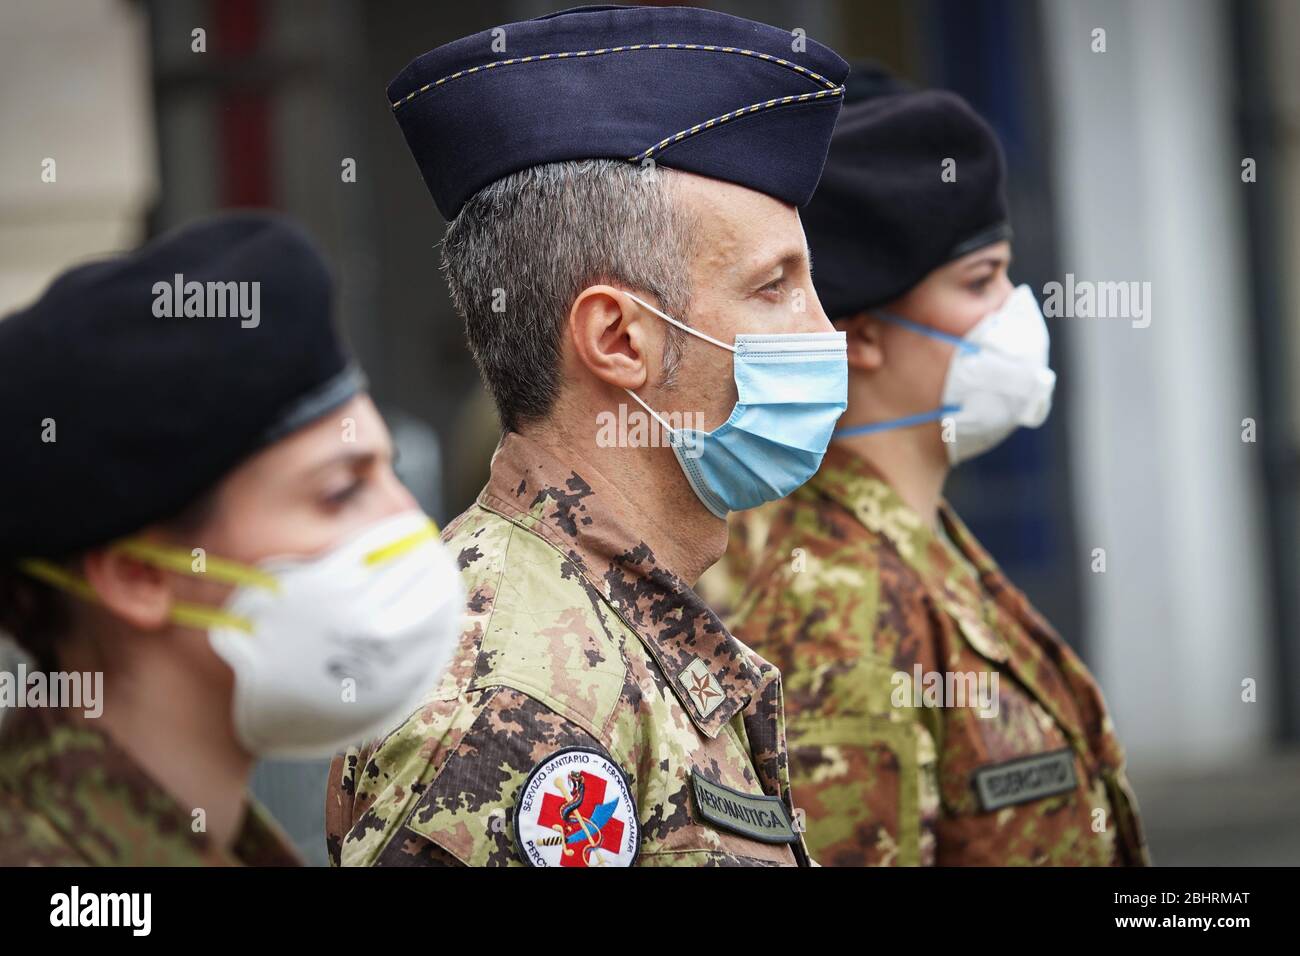 Nuove infermiere militari da impiegare nelle case di cura per aiutare il sistema sanitario regionale a far fronte all’emergenza del coronavirus. Torino, Italia - Aprile 2020 Foto Stock